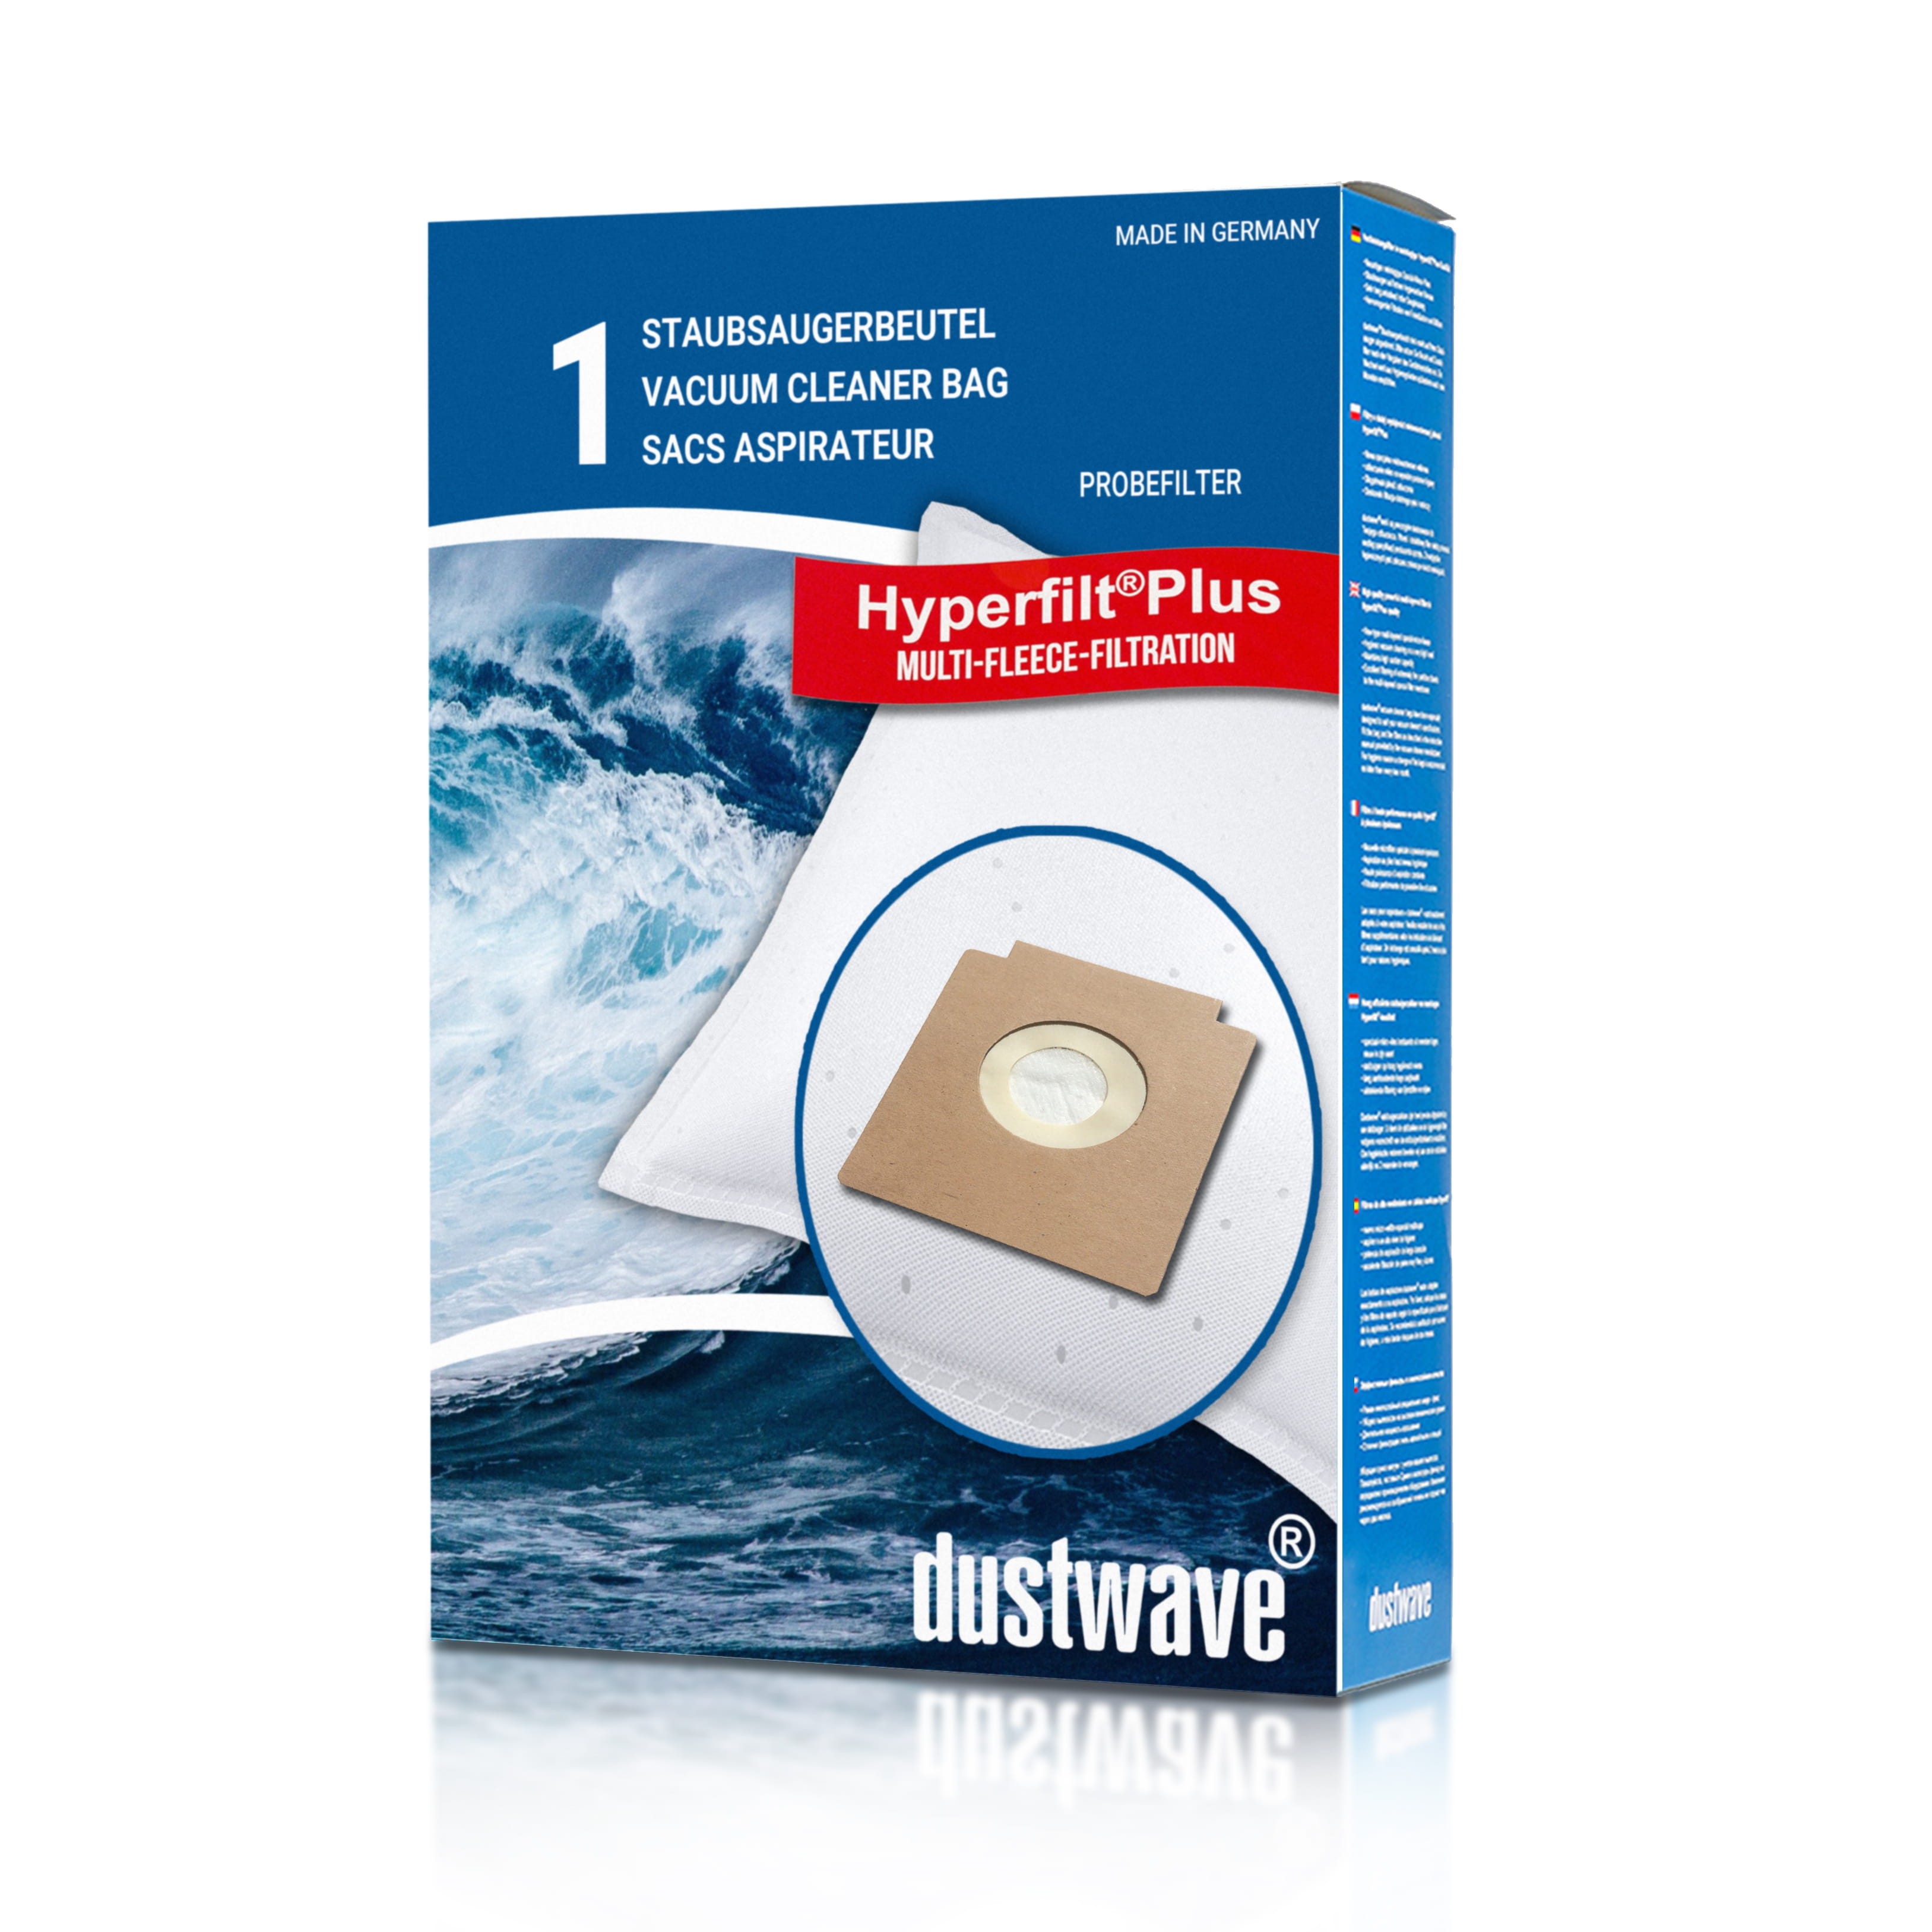 Dustwave® 1 Staubsaugerbeutel für Circon grey - hocheffizient, mehrlagiges Mikrovlies mit Hygieneverschluss - Made in Germany